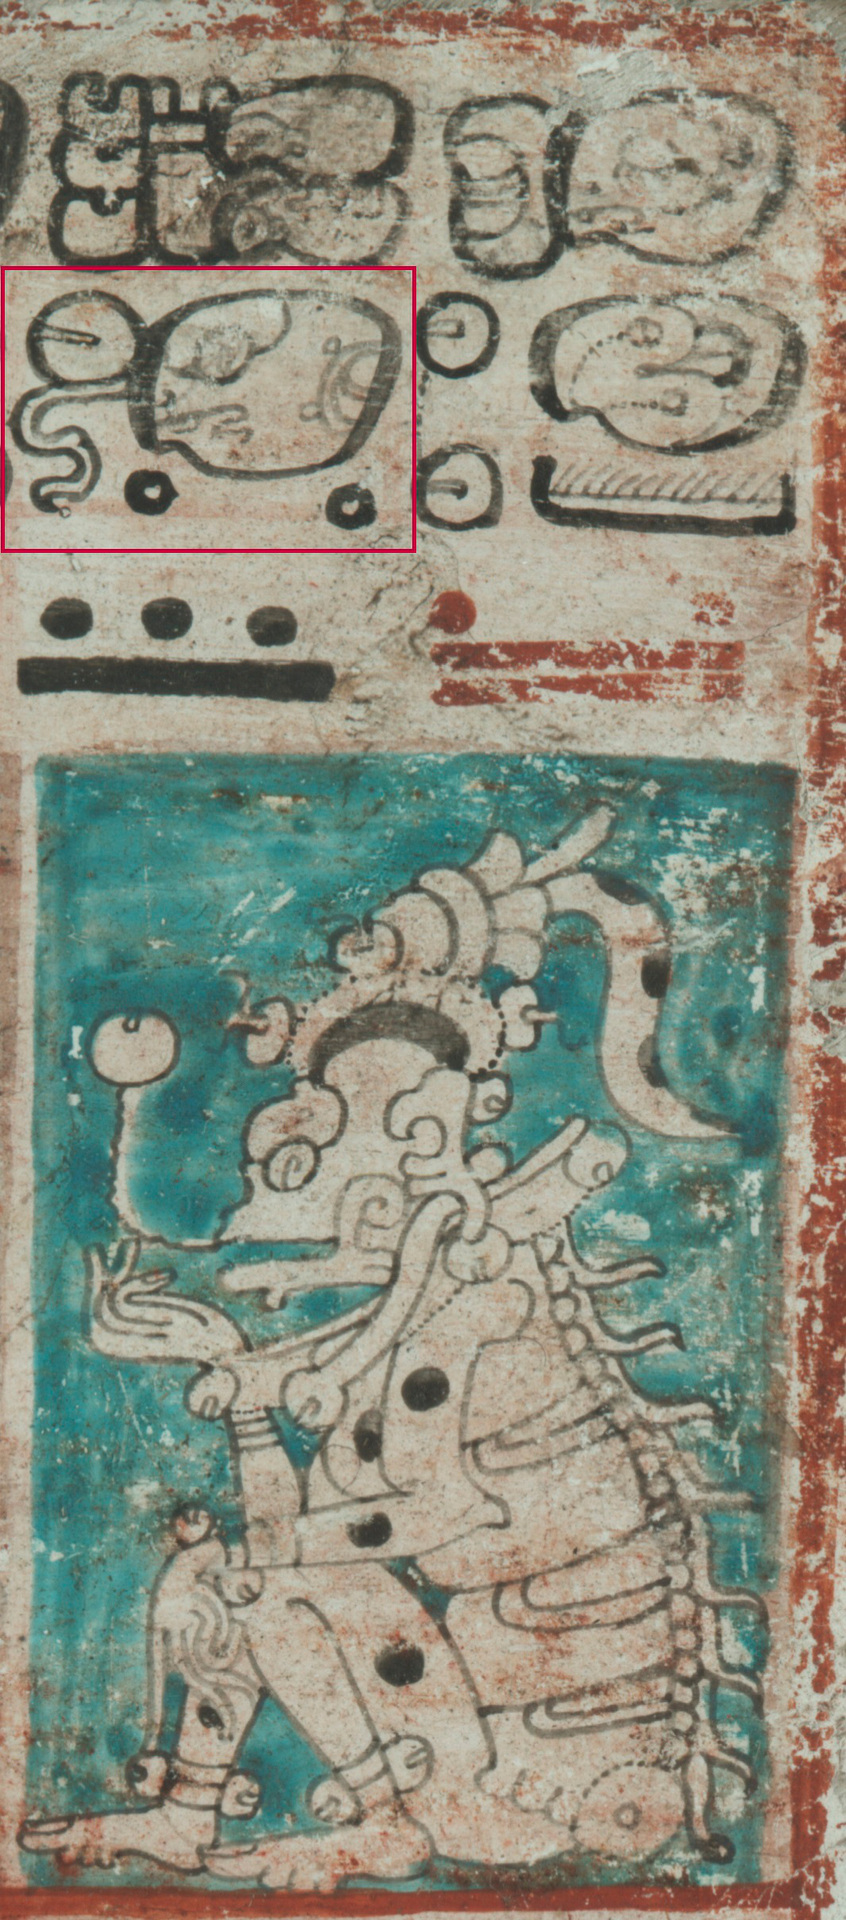 Codex Dresdensis: Todesgott